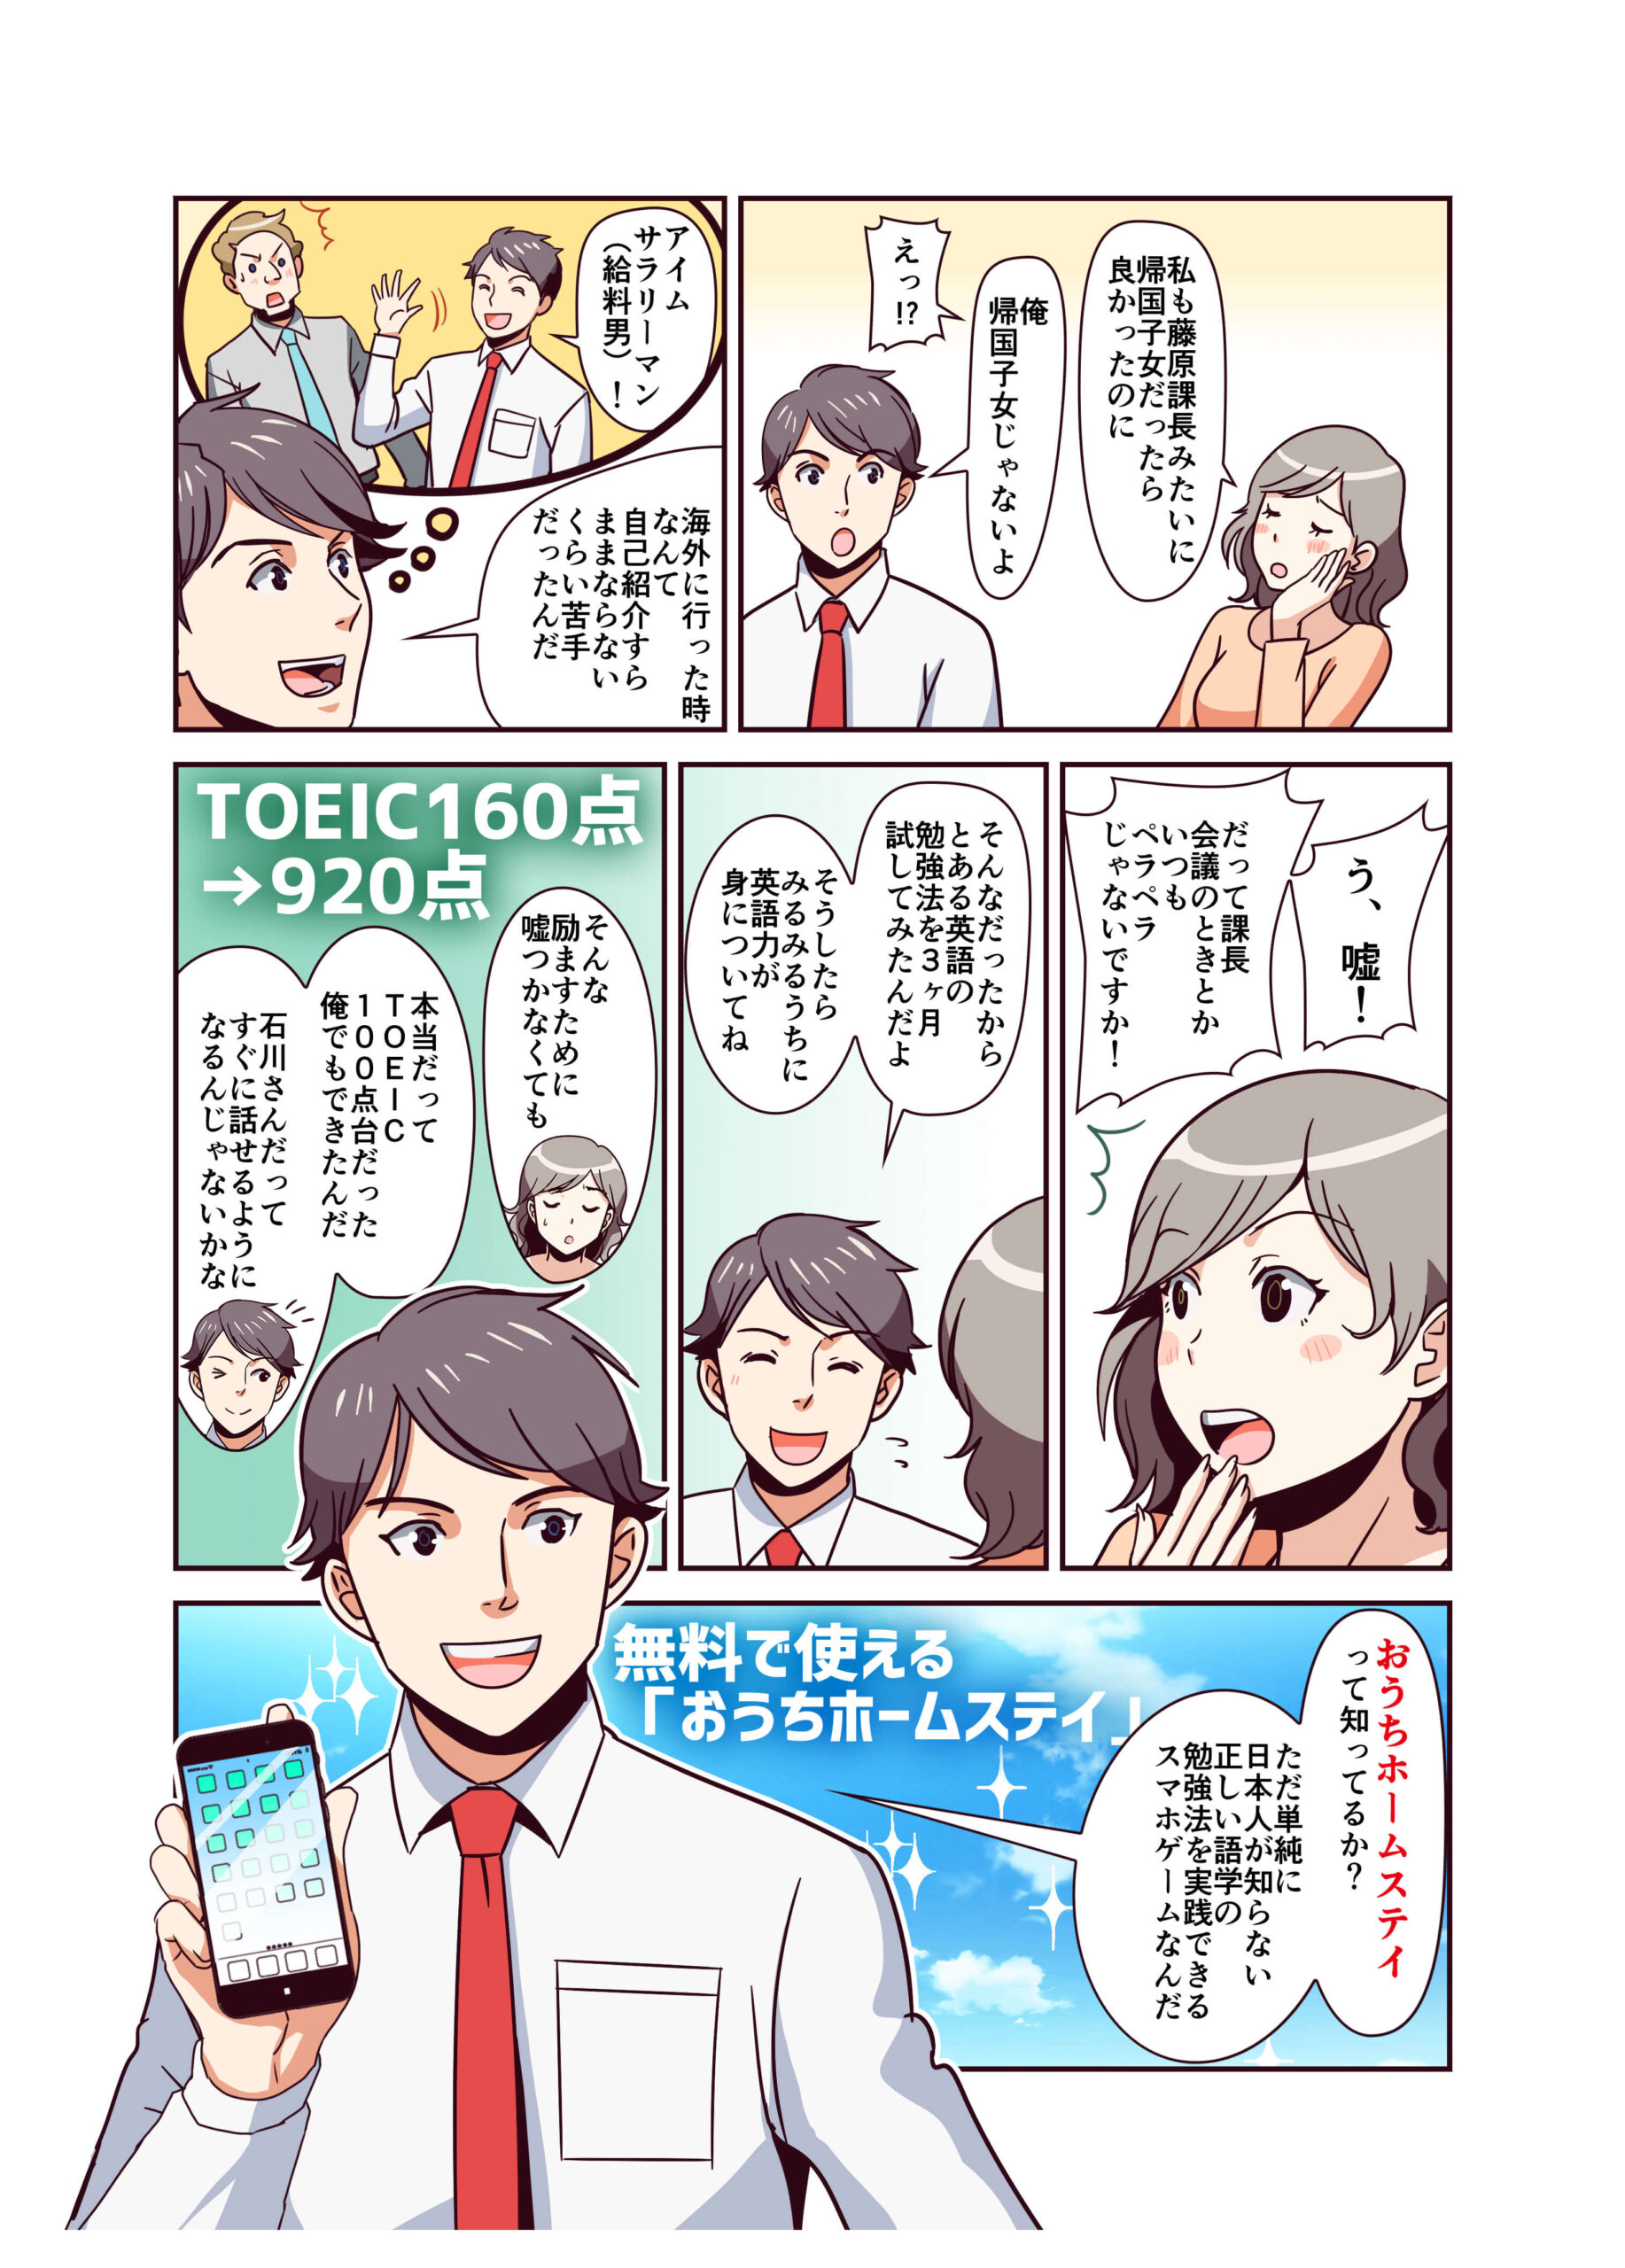 おうちホームステイ宣伝漫画・イラスト